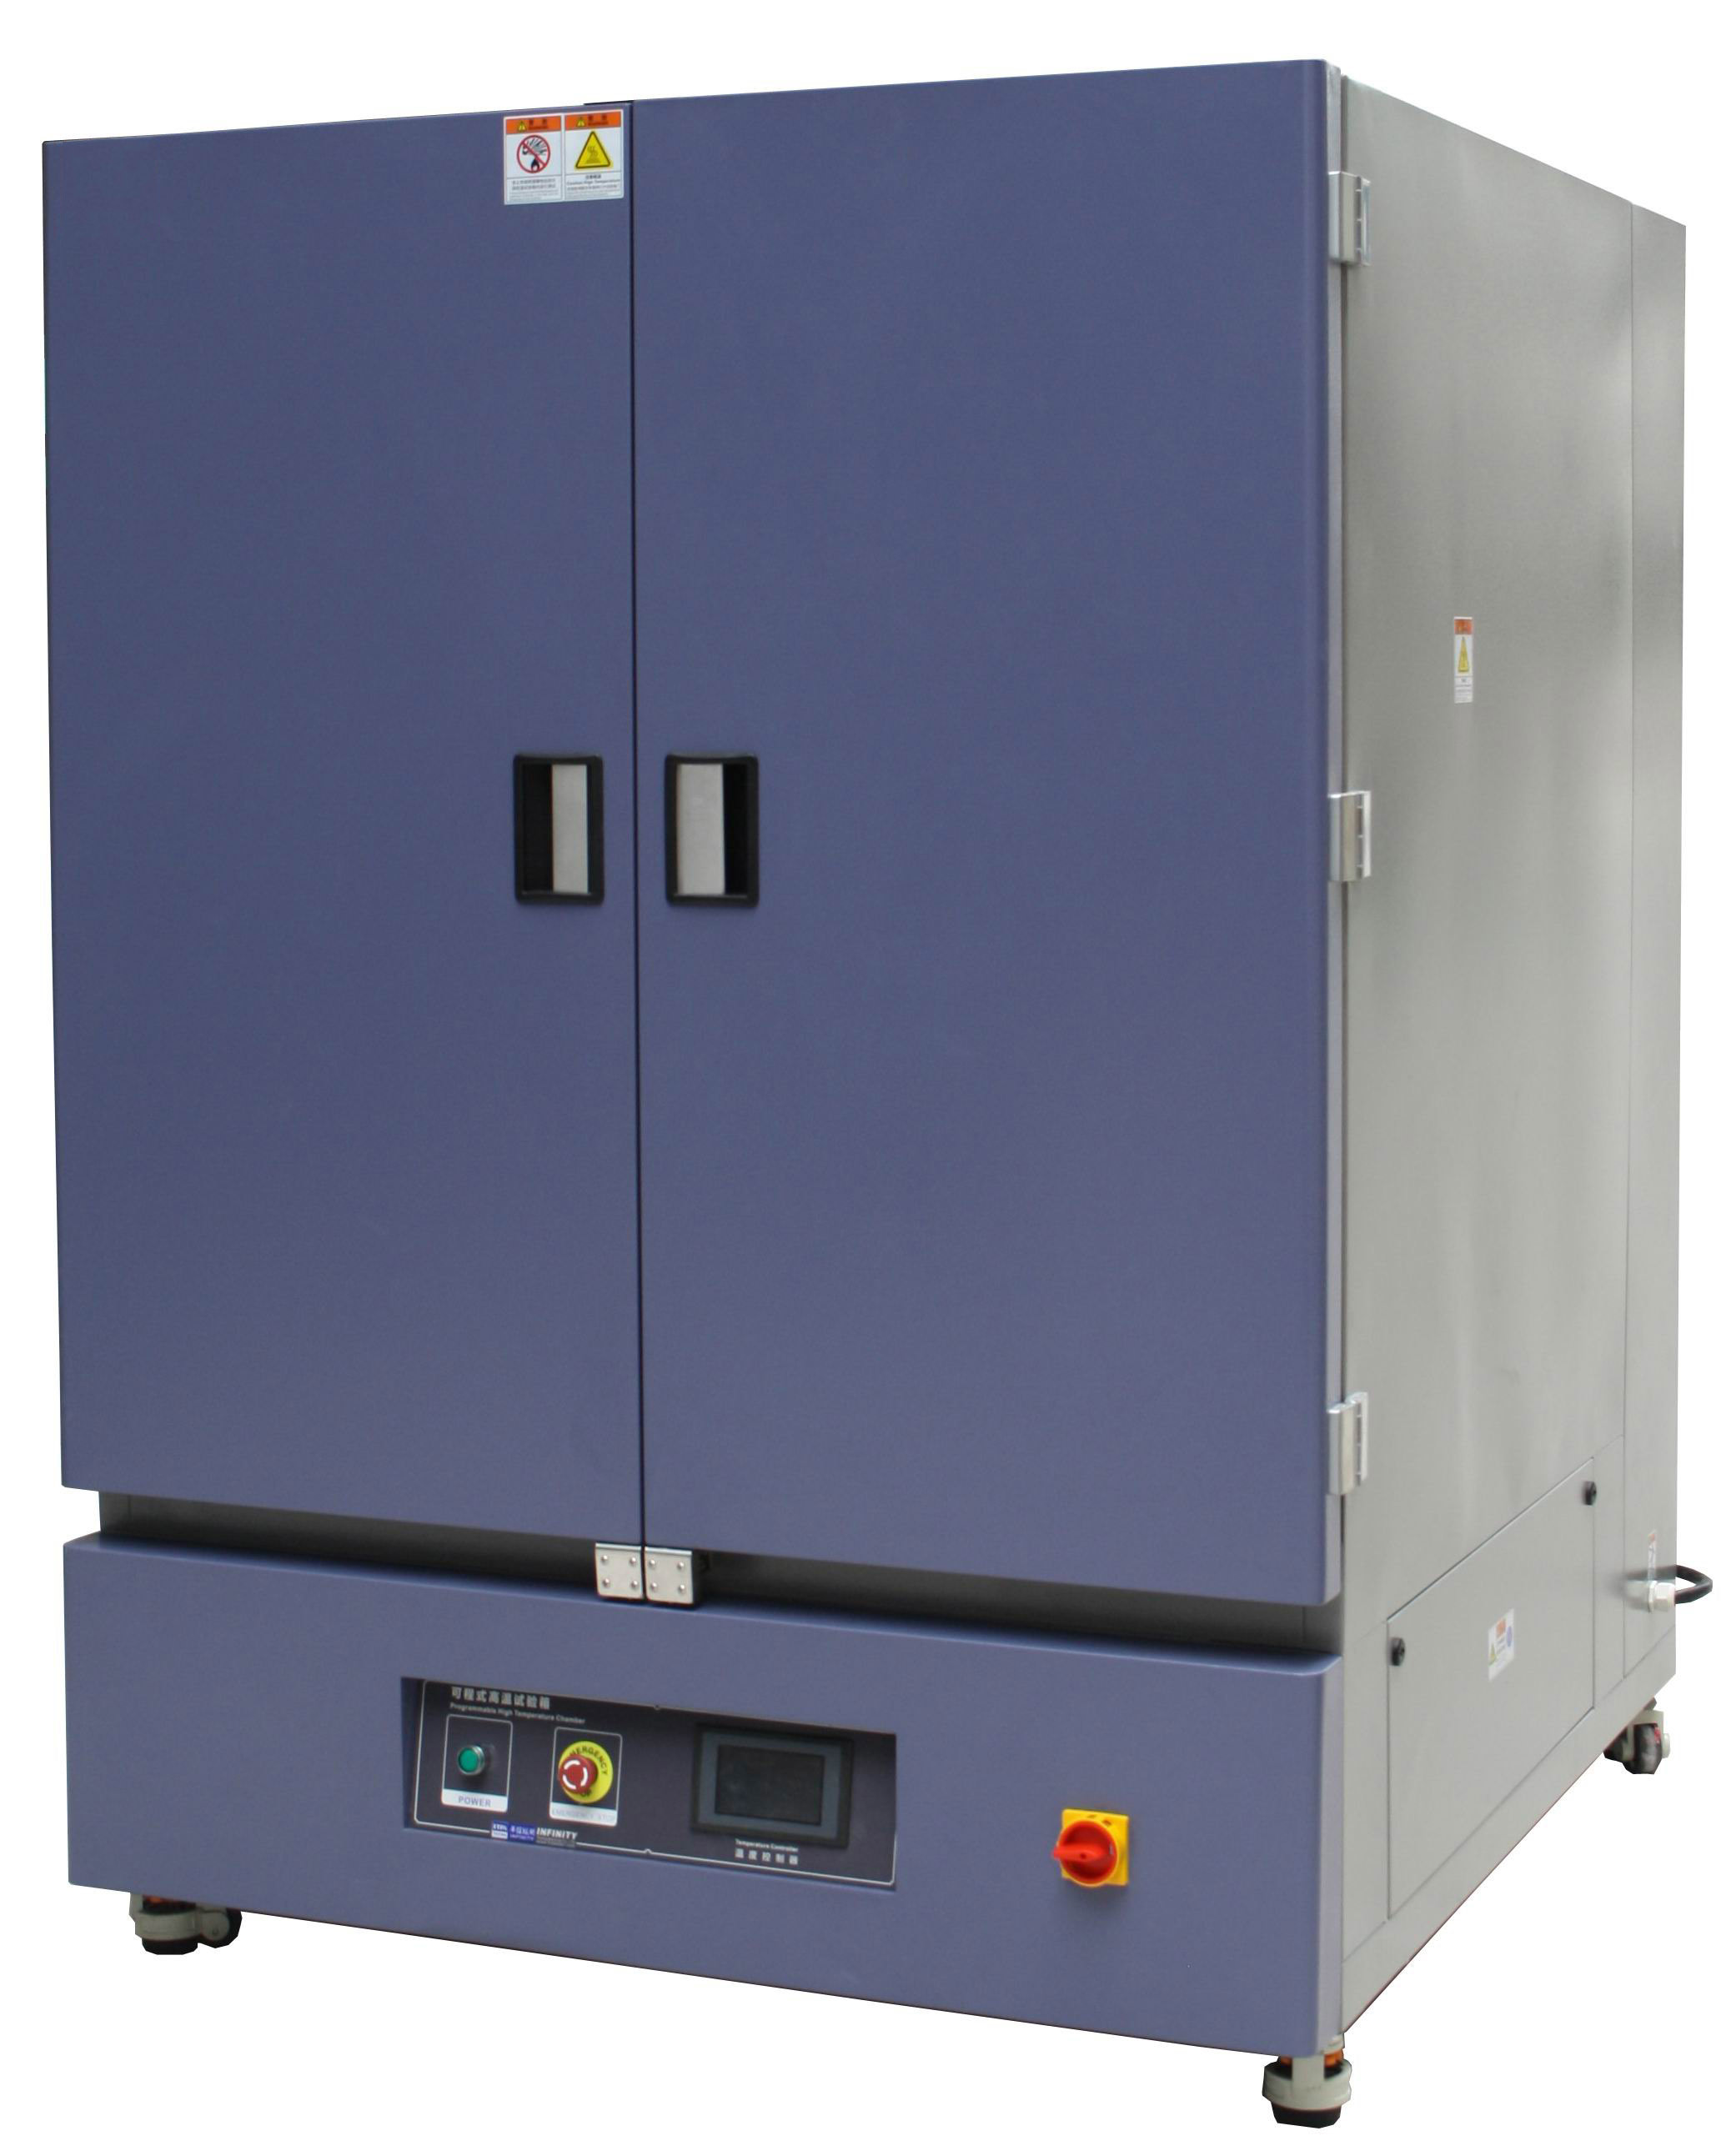 Pengeringan oven suhu tinggi yang dapat diprogram Pengering Ruang pengujian lingkungan RT+10°C~300°C